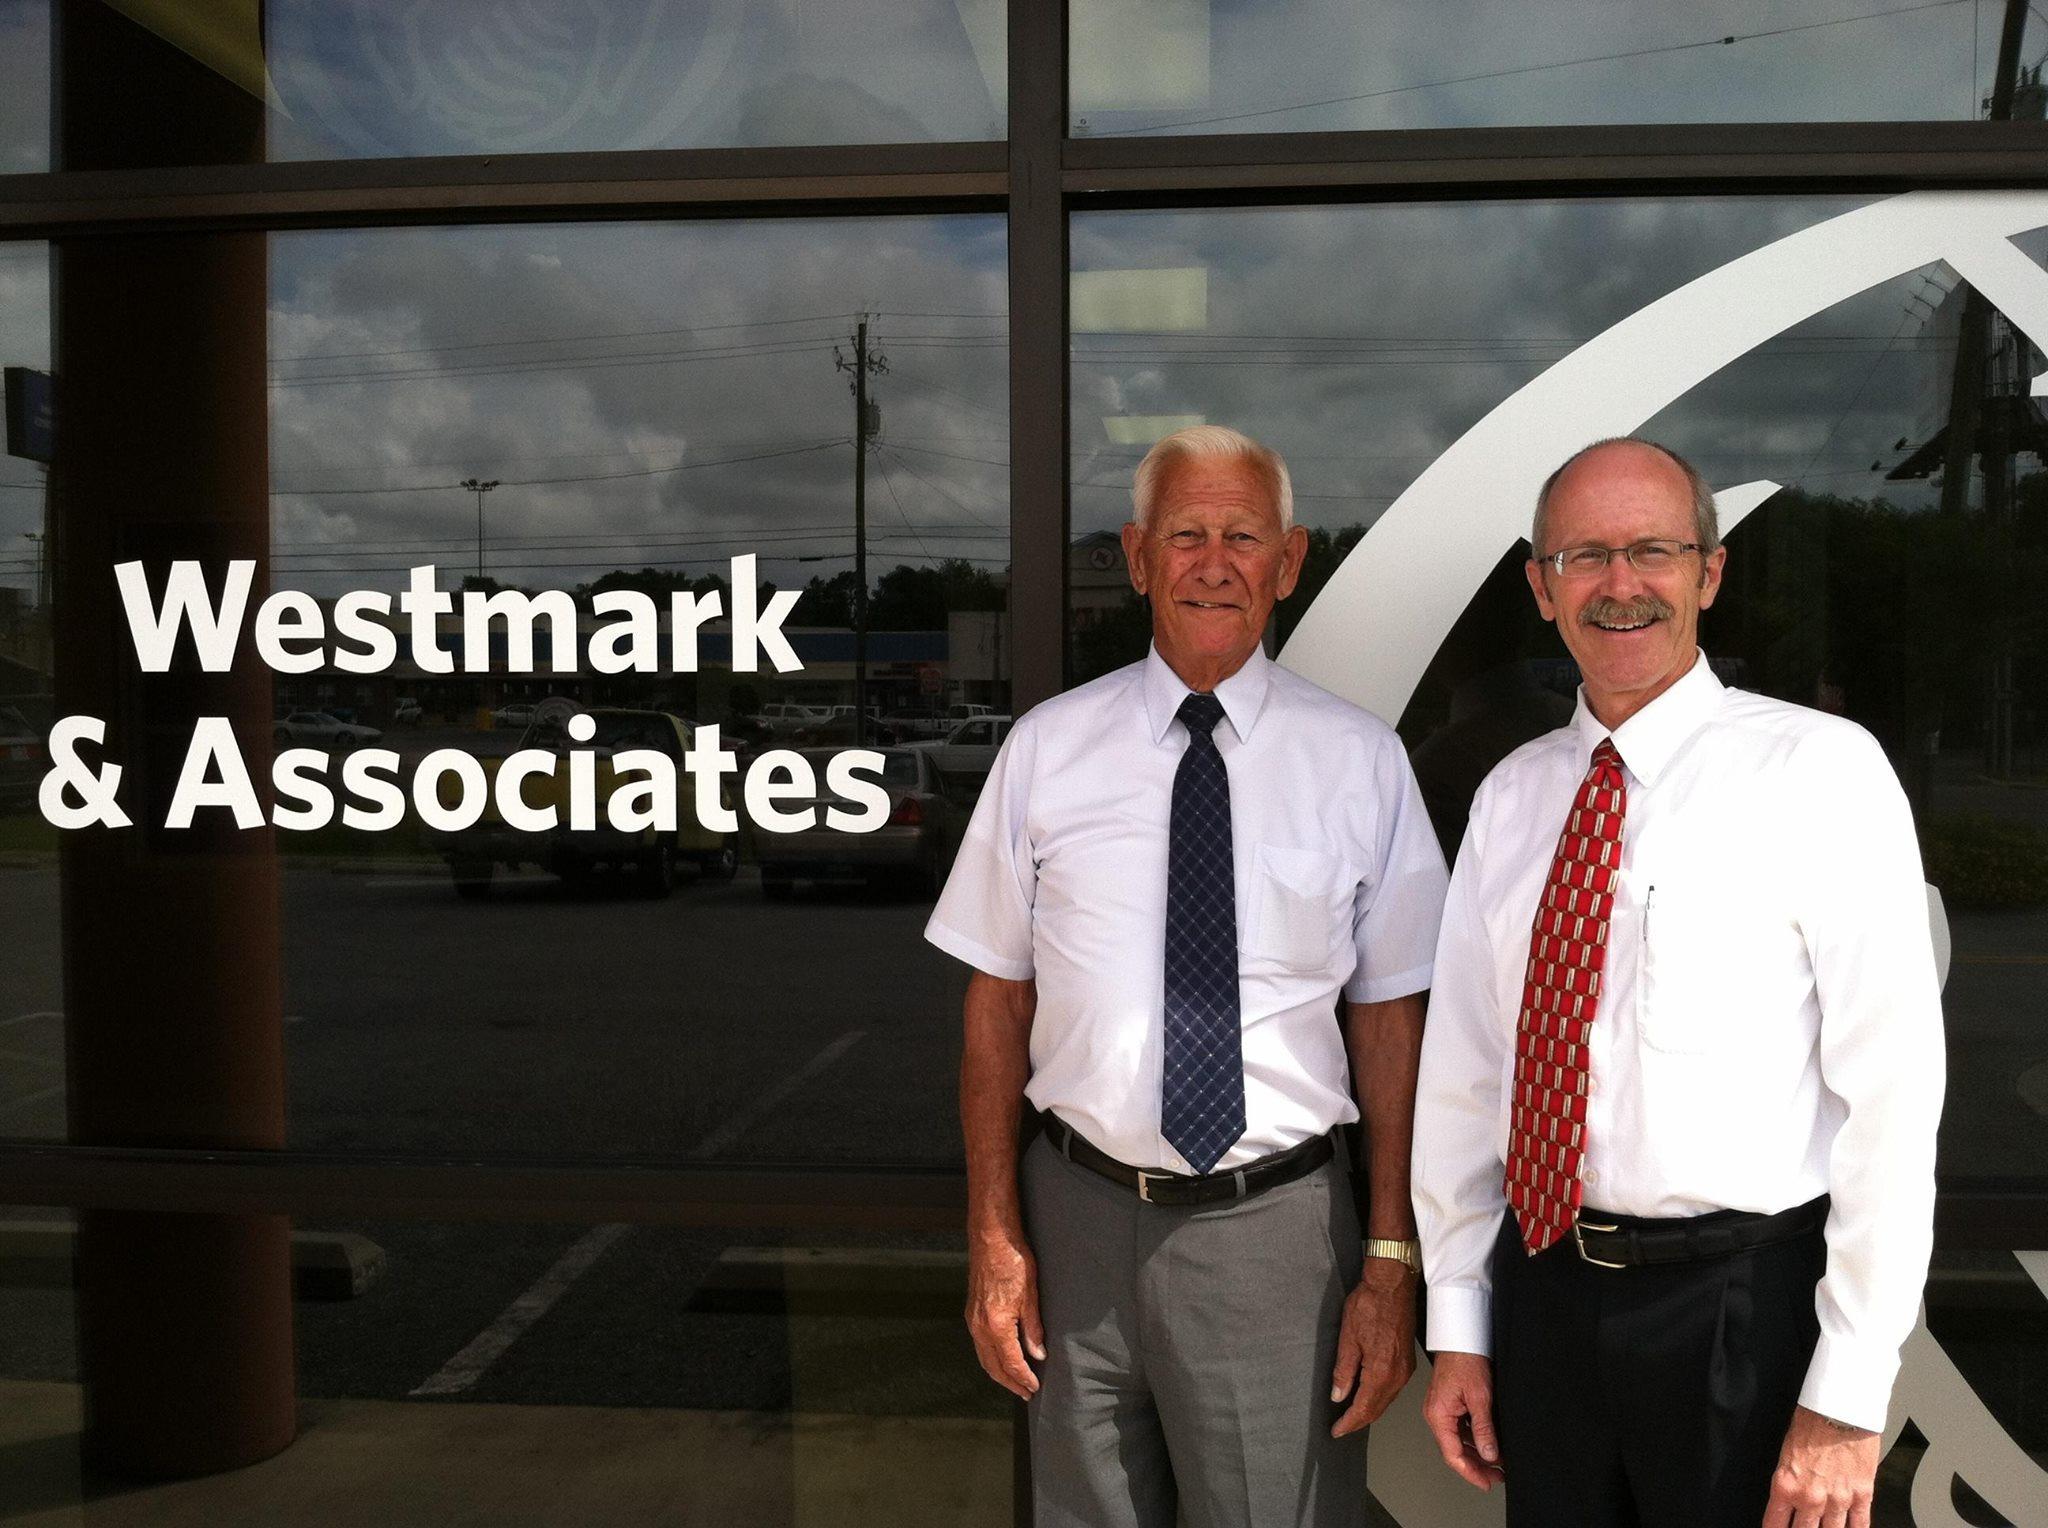 Scott Westmark: Allstate Insurance Photo